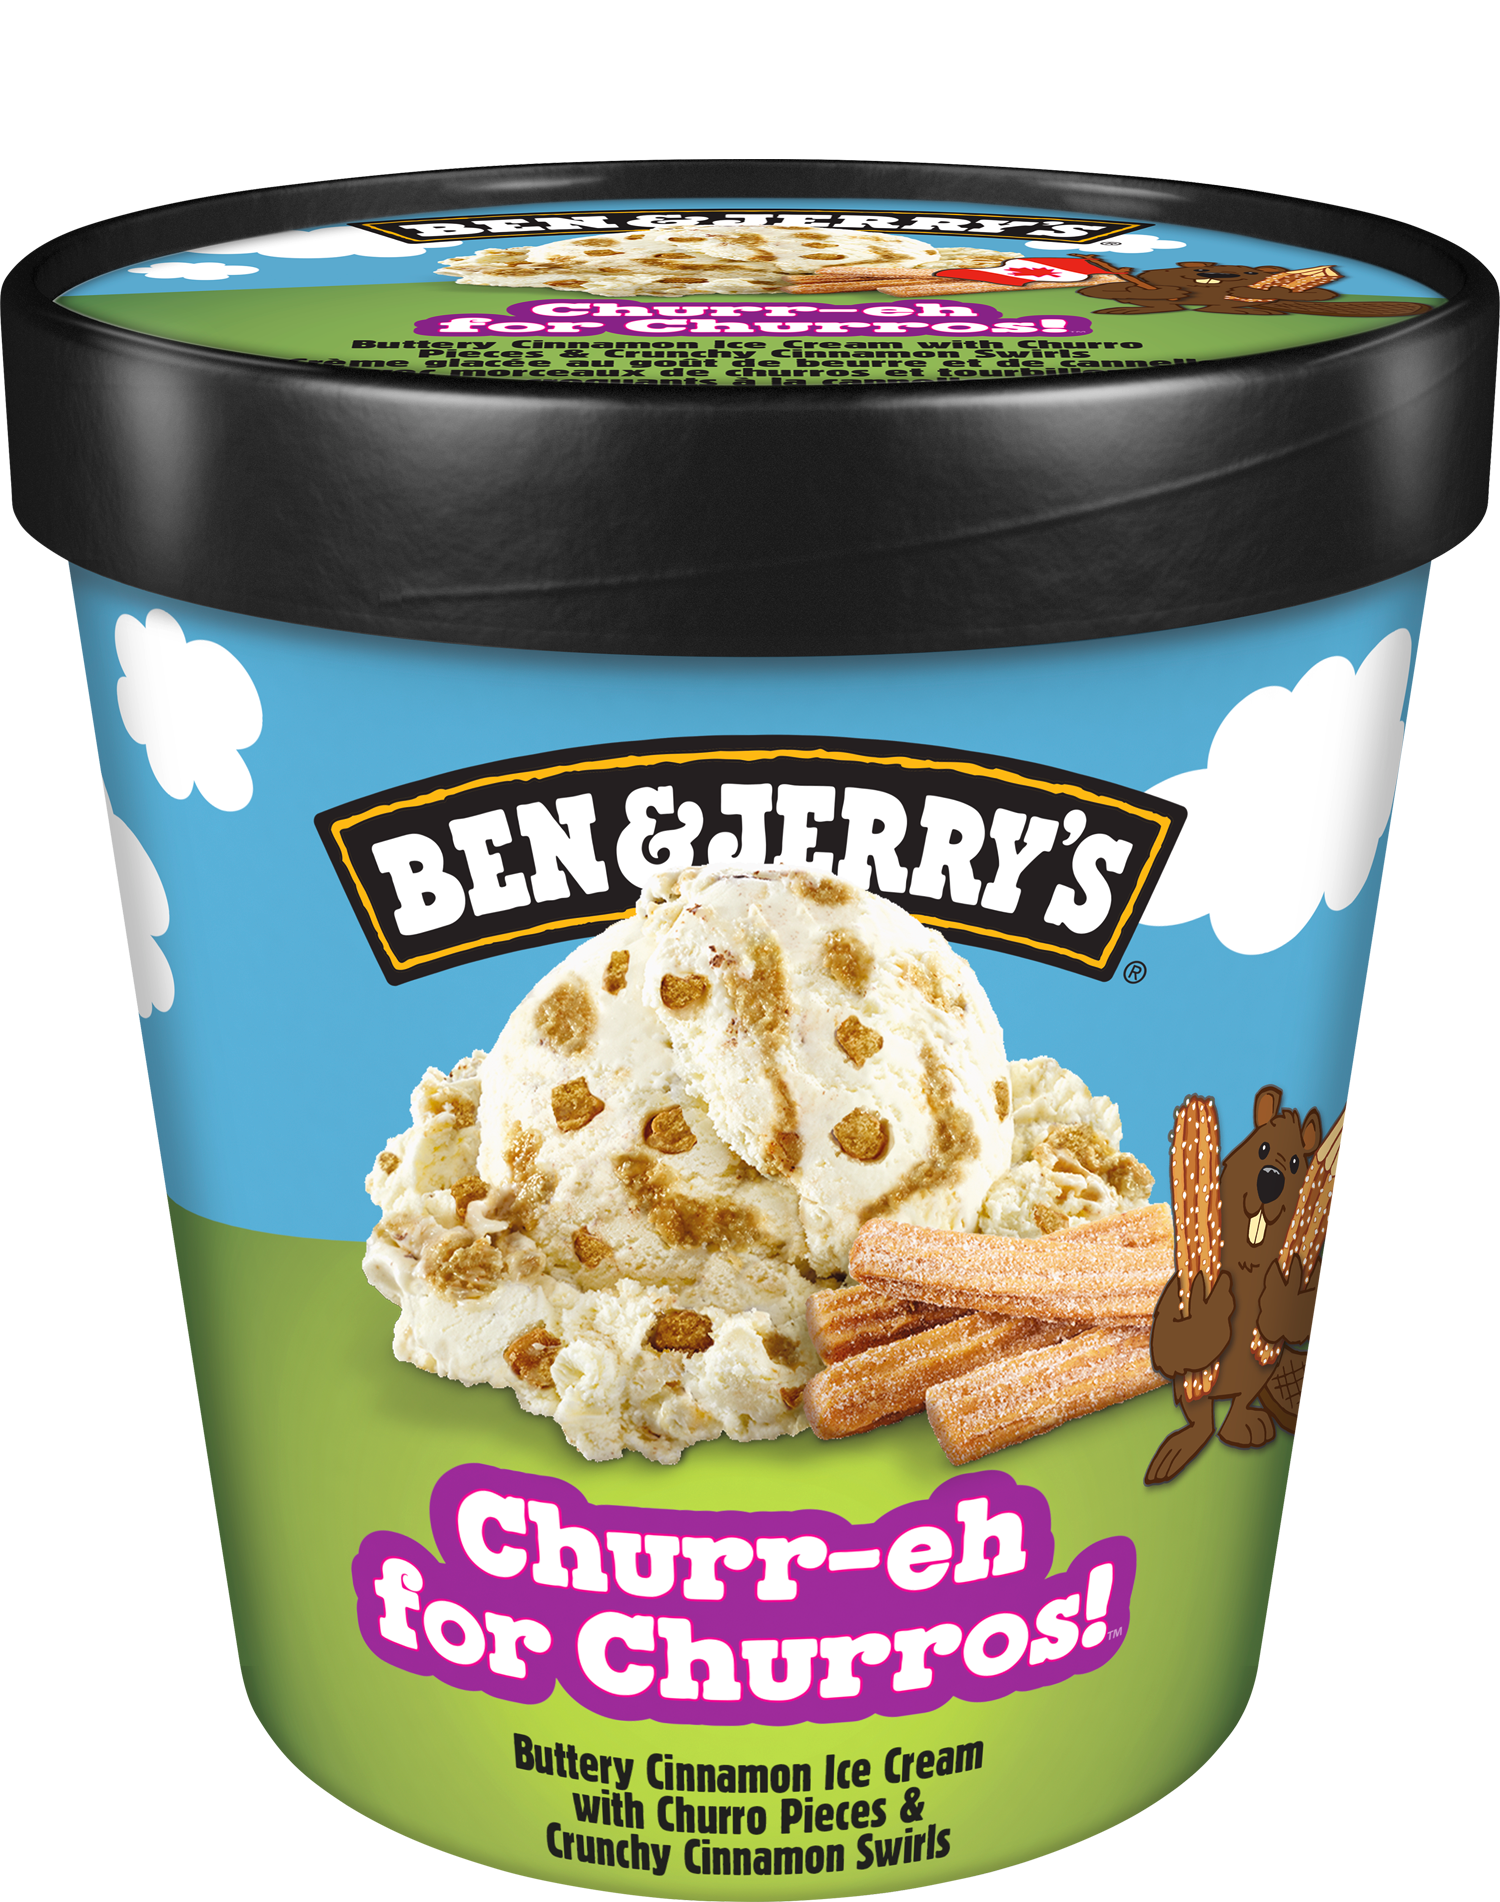 Churr-eh for Churros™ Original Ice Cream Pints